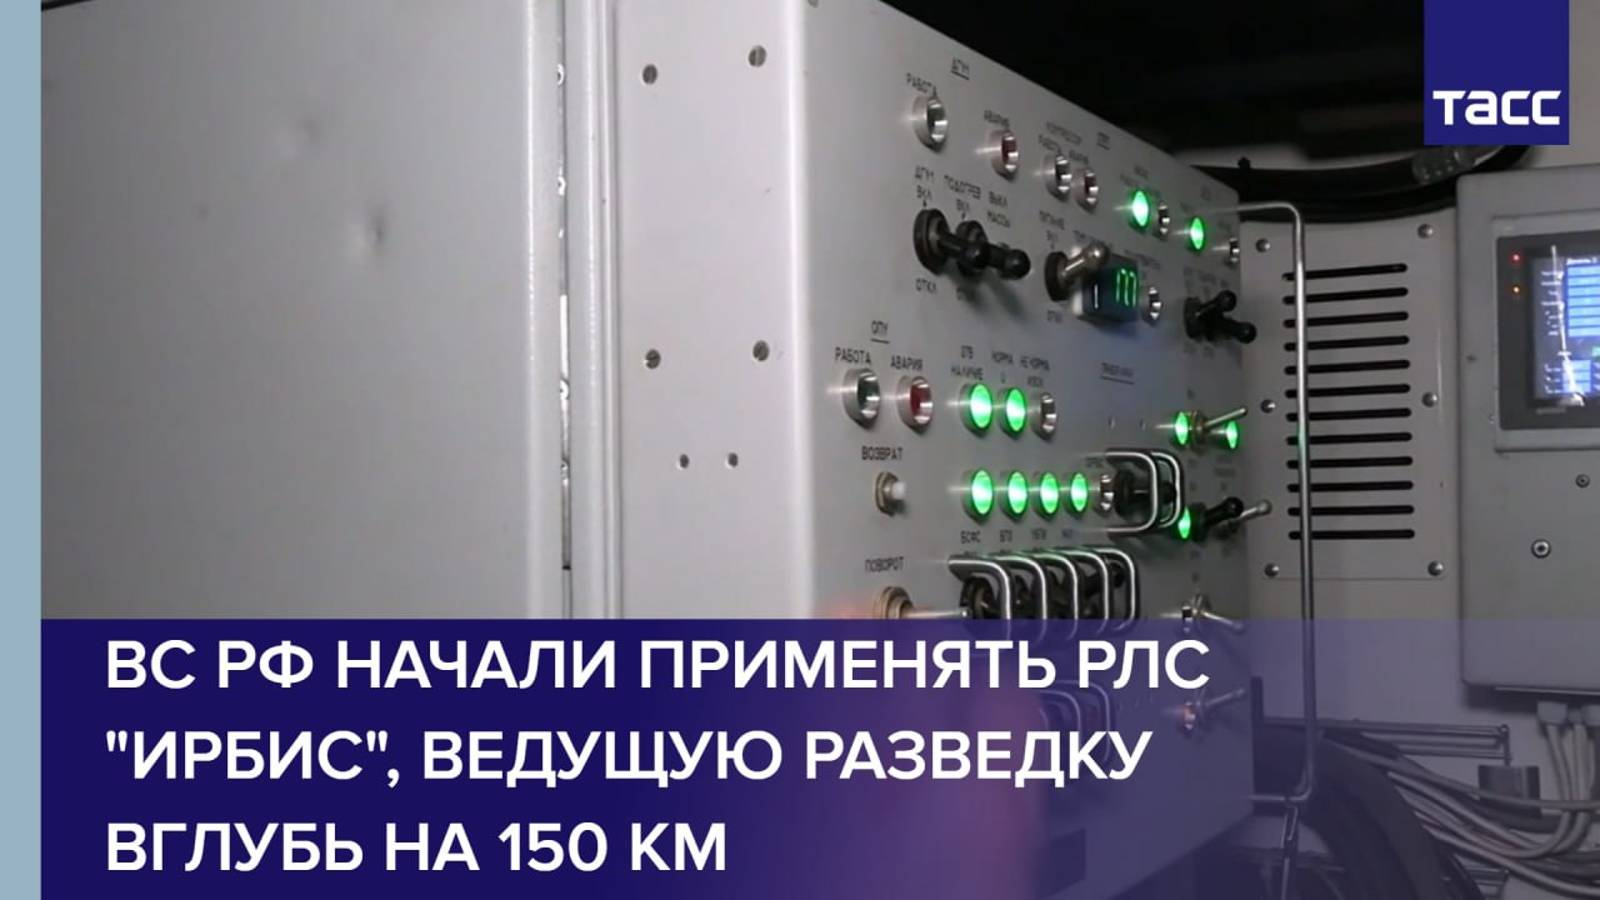 ВС РФ начали применять РЛС "Ирбис", ведущую разведку вглубь на 150 км